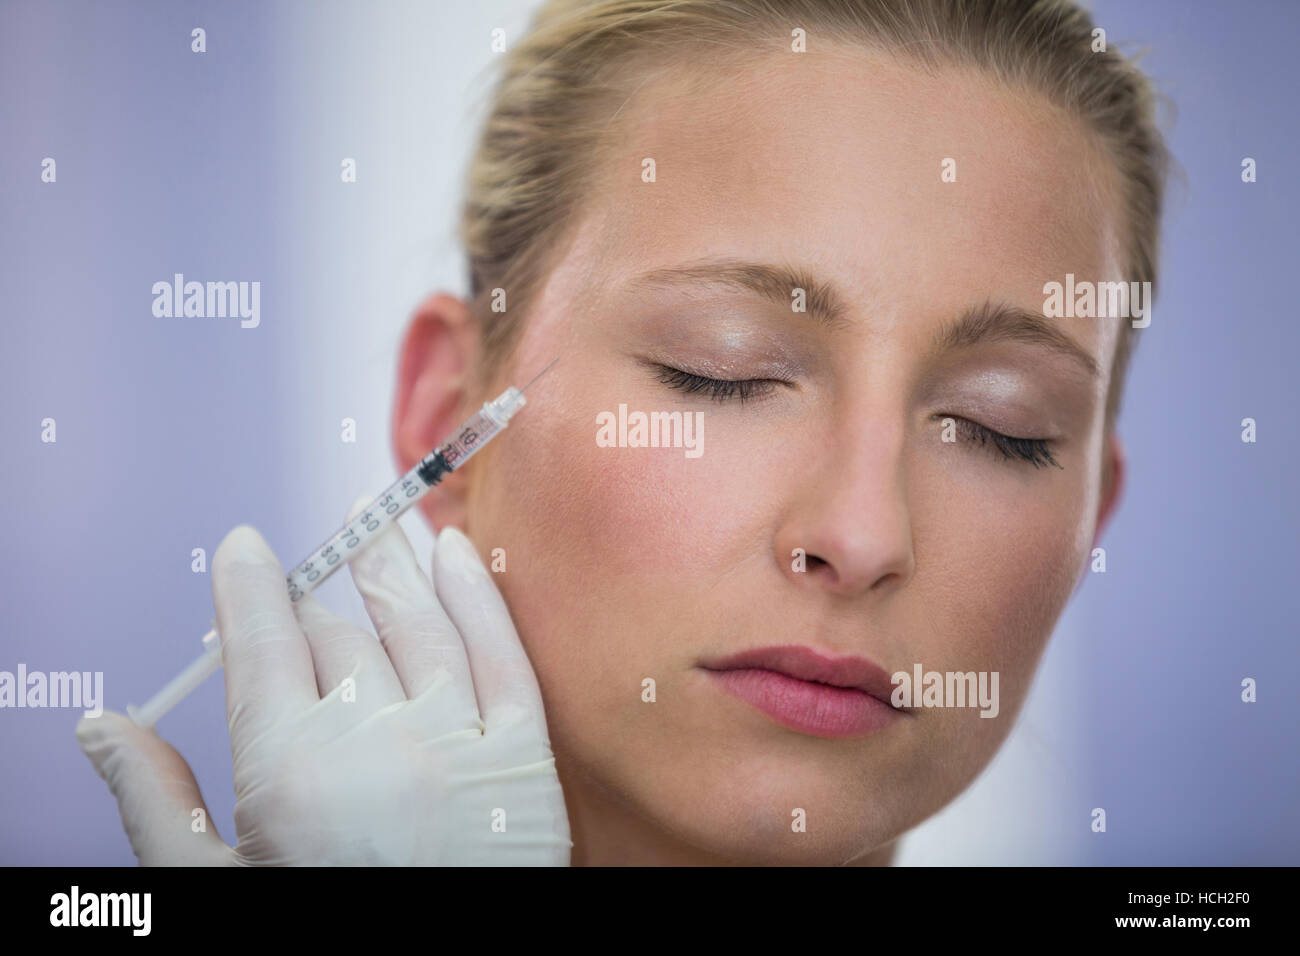 Paciente recibe una inyección de Botox en la cara Foto de stock